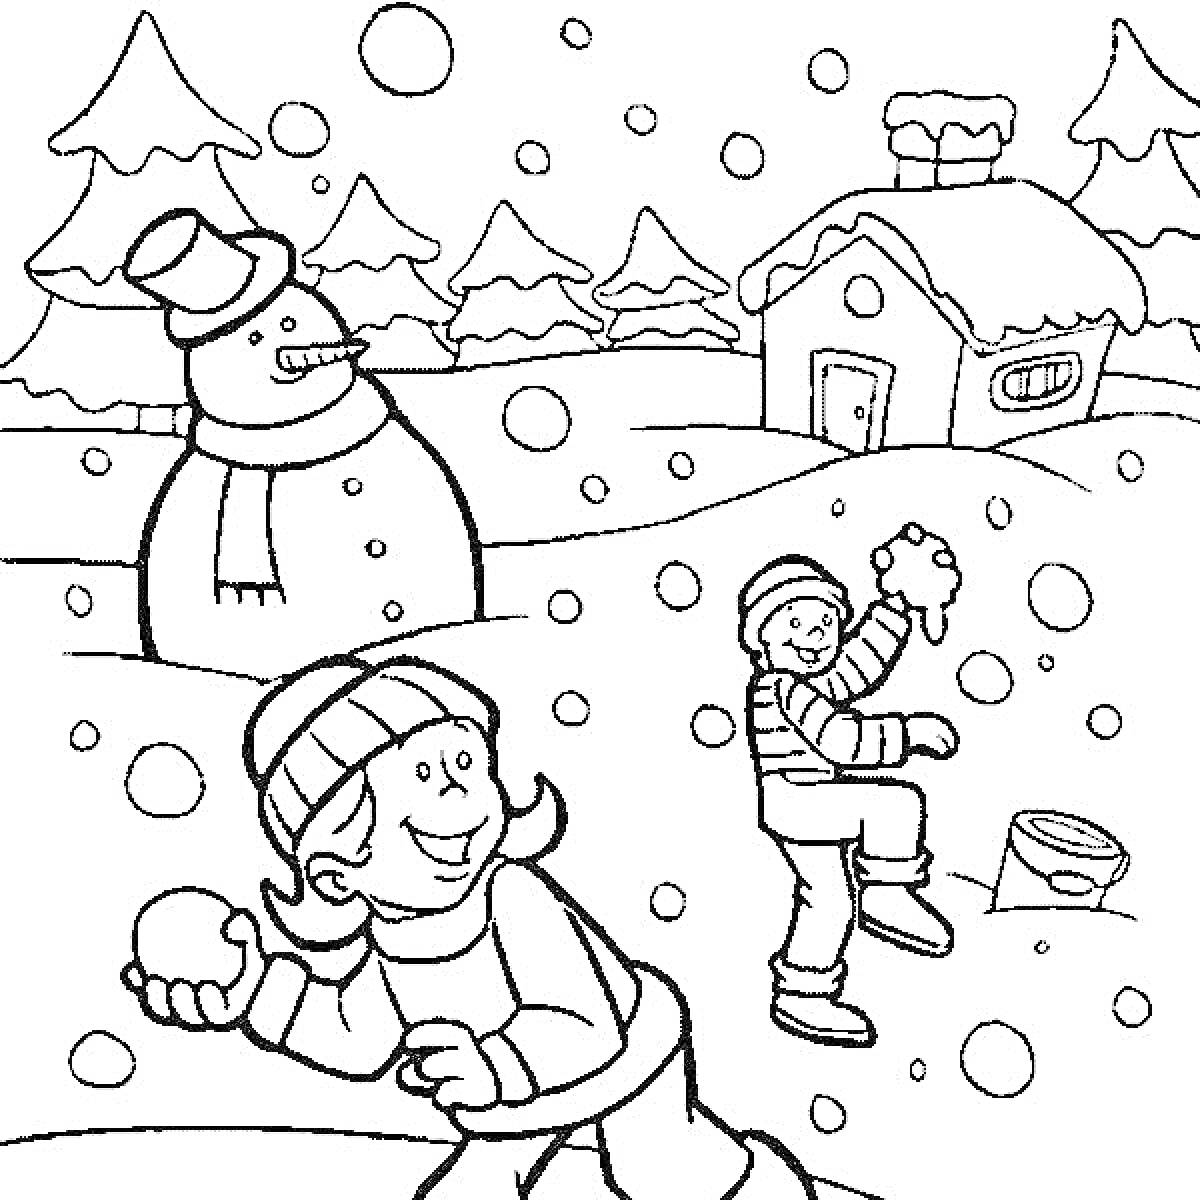 Зимняя игра детей со снежками возле снеговика и домика